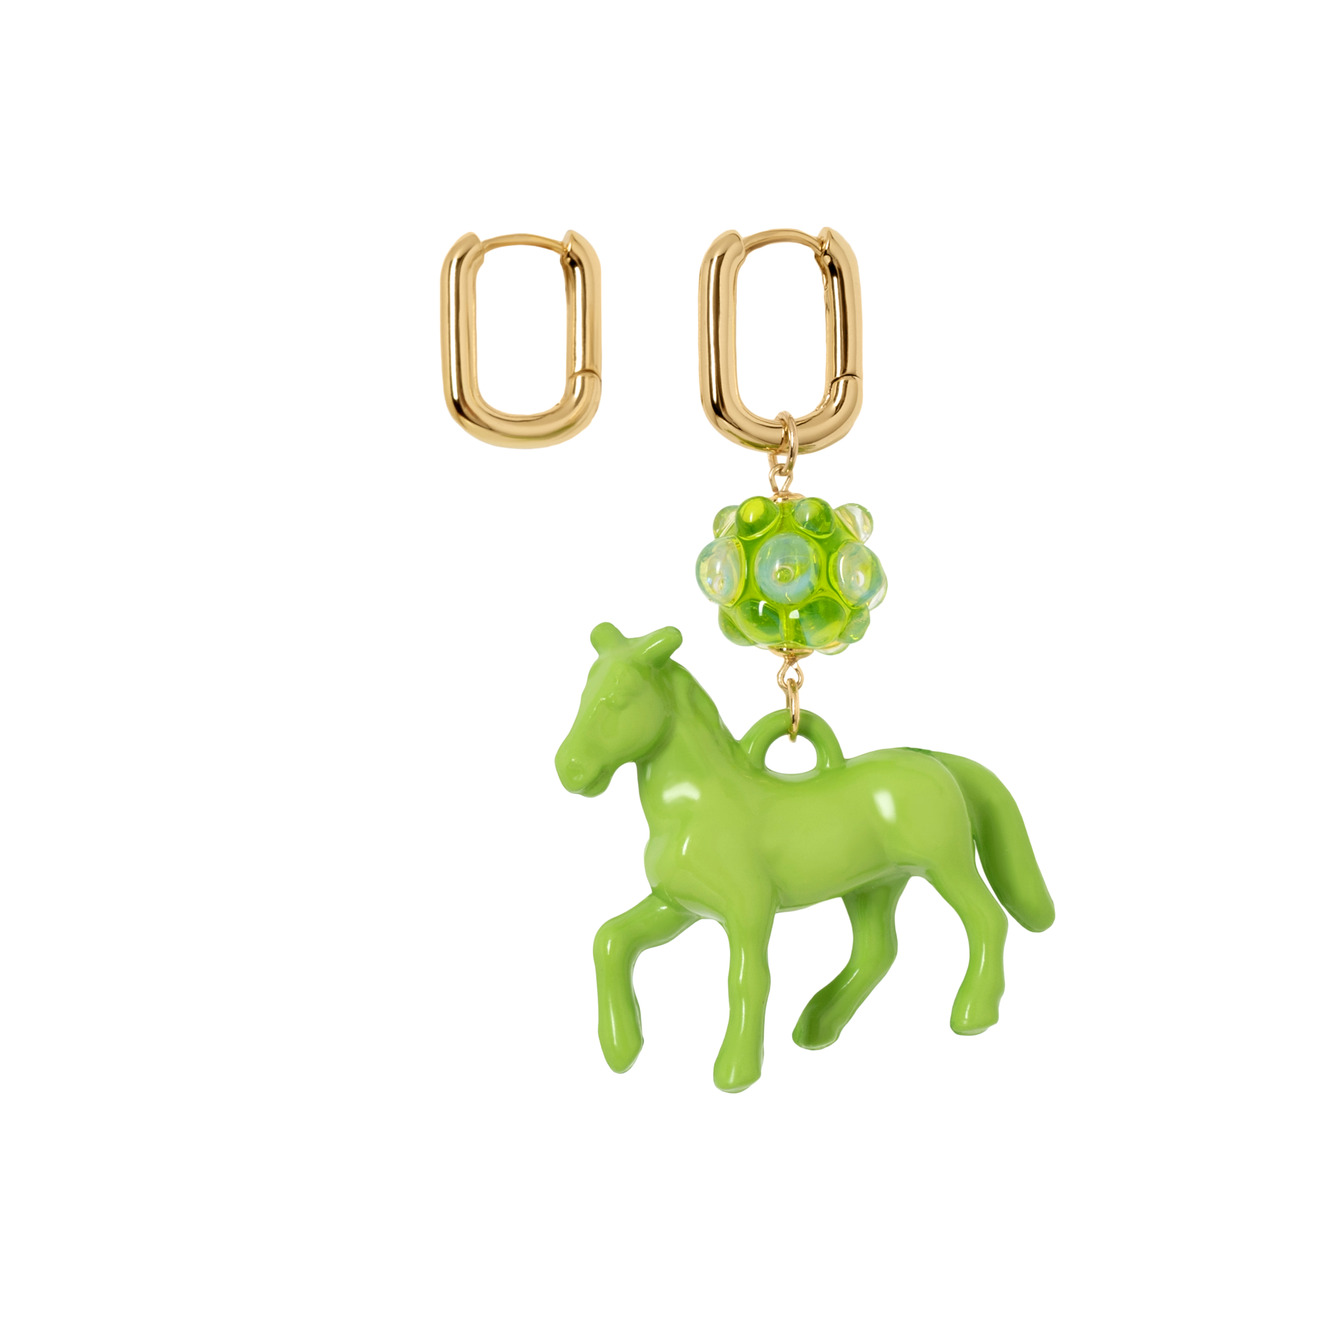 Kotlo Studio Золотистые серьги с зеленой лошадкой и бусиной Мурано kotlo studio золотистые серьги с зеленой лошадкой и бусиной мурано